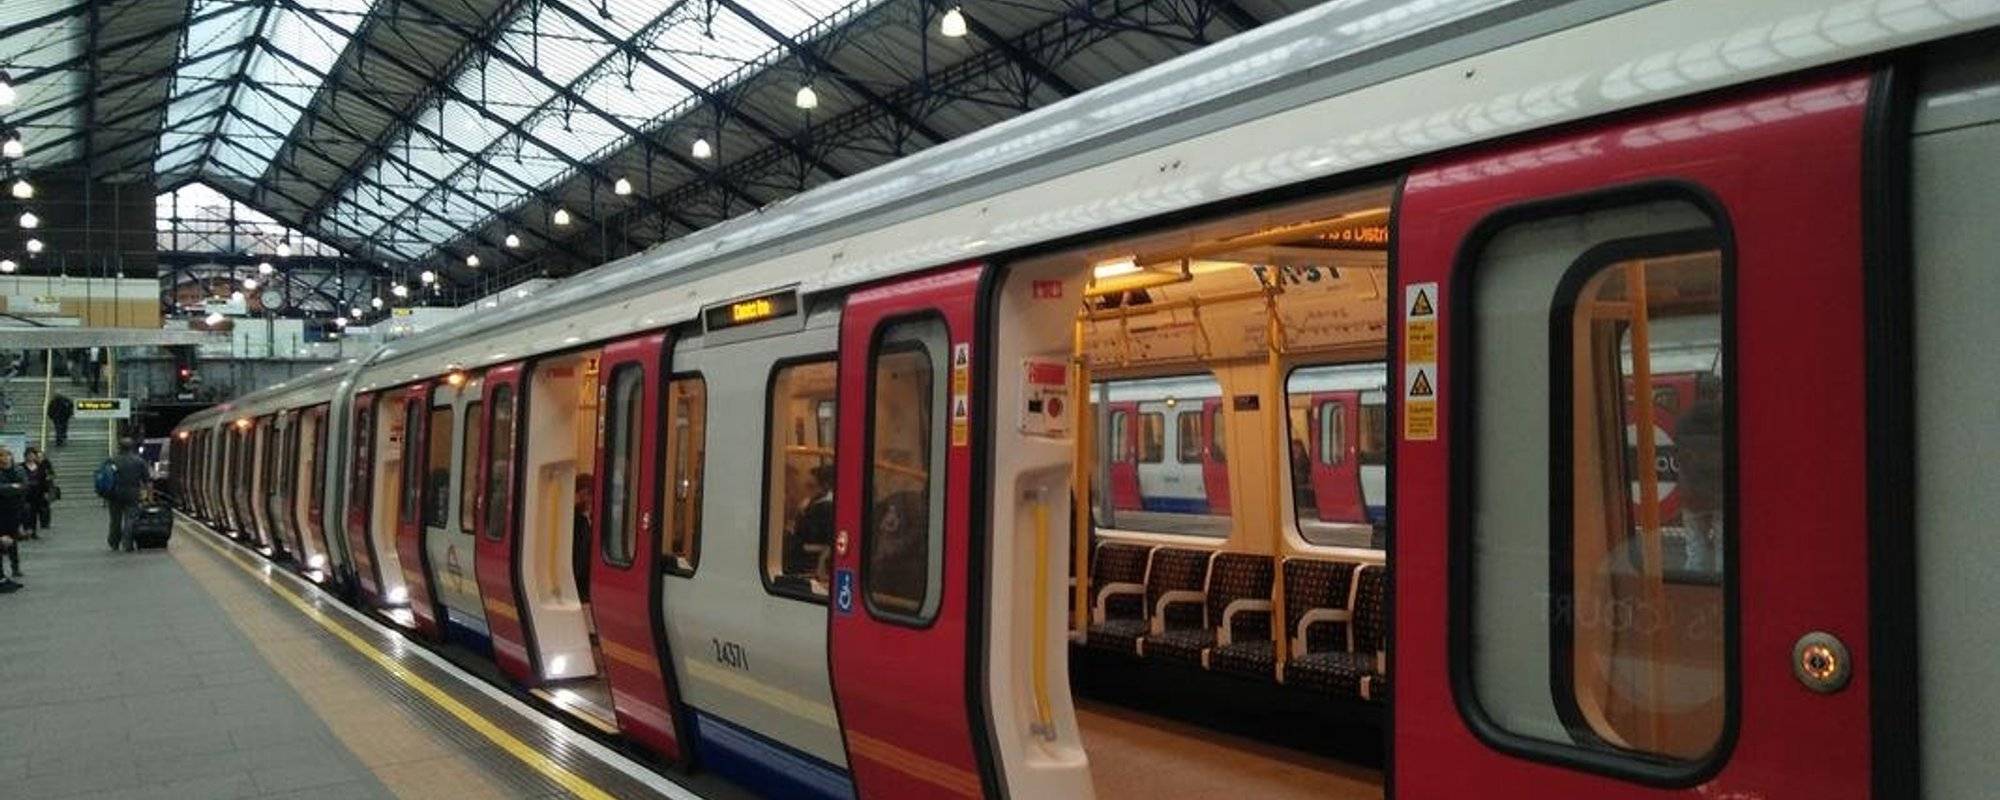 London Tube or Underground - vehiclephotography